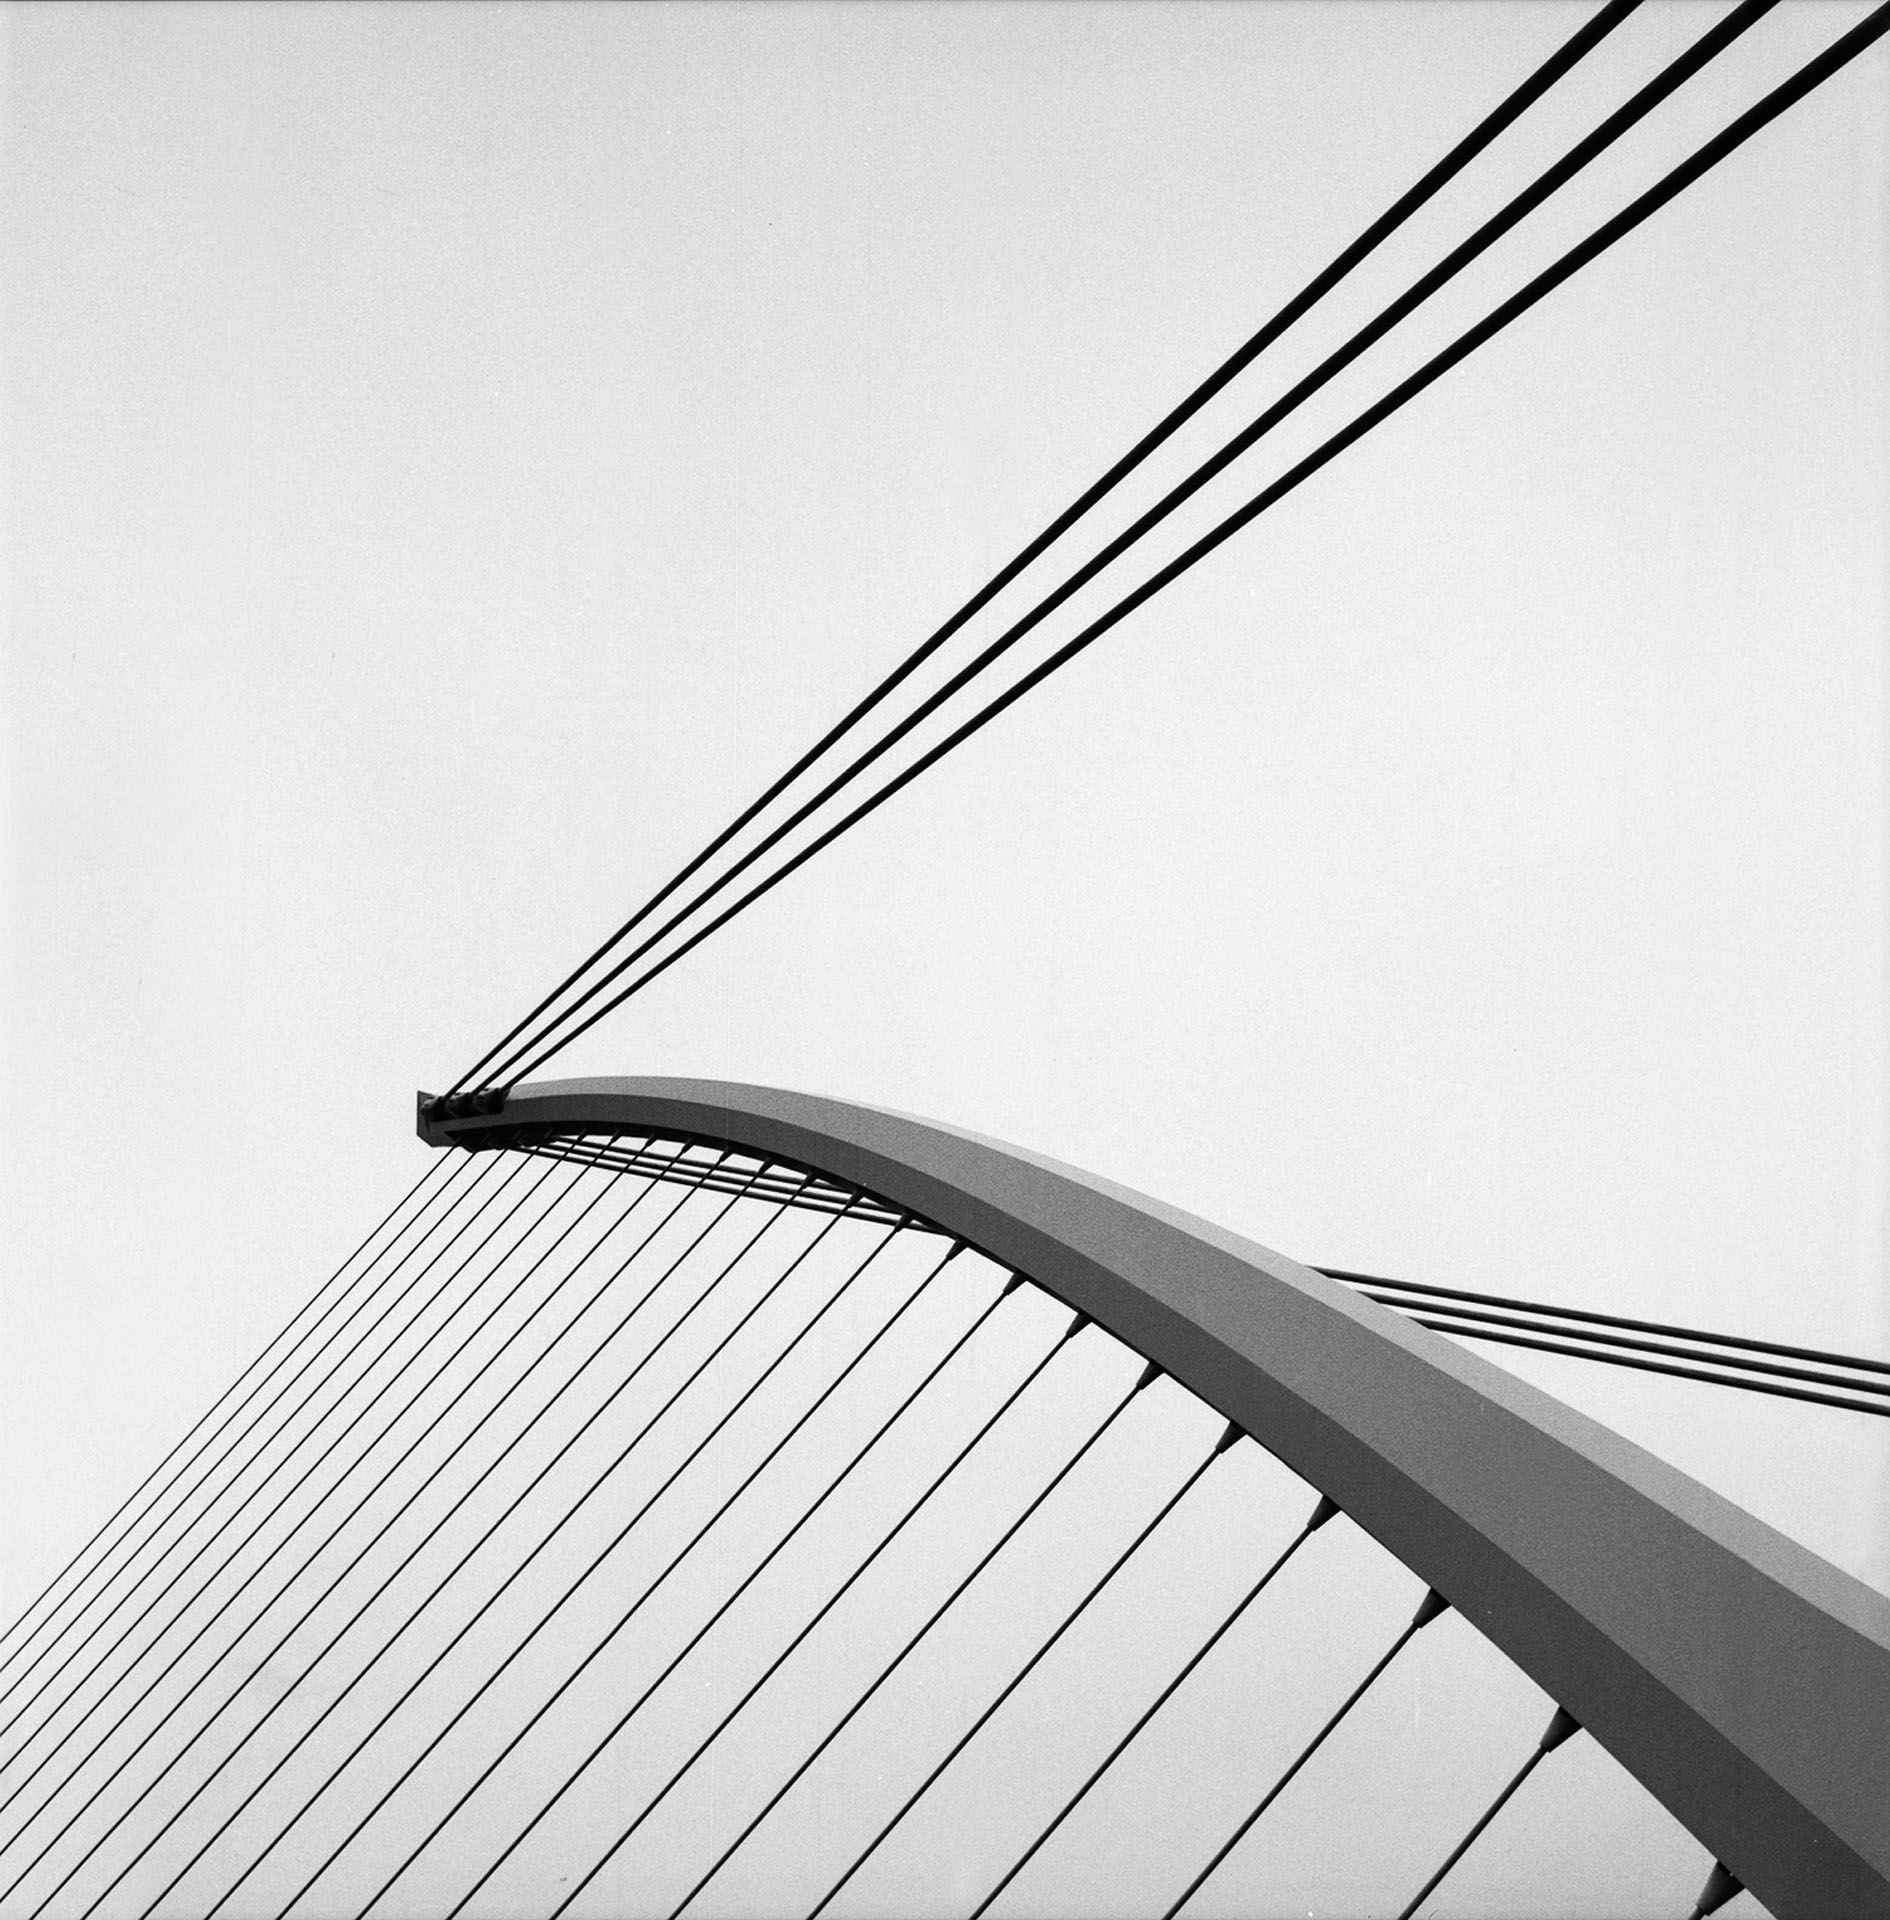 Samuel Beckett’s Bridge, Dublin